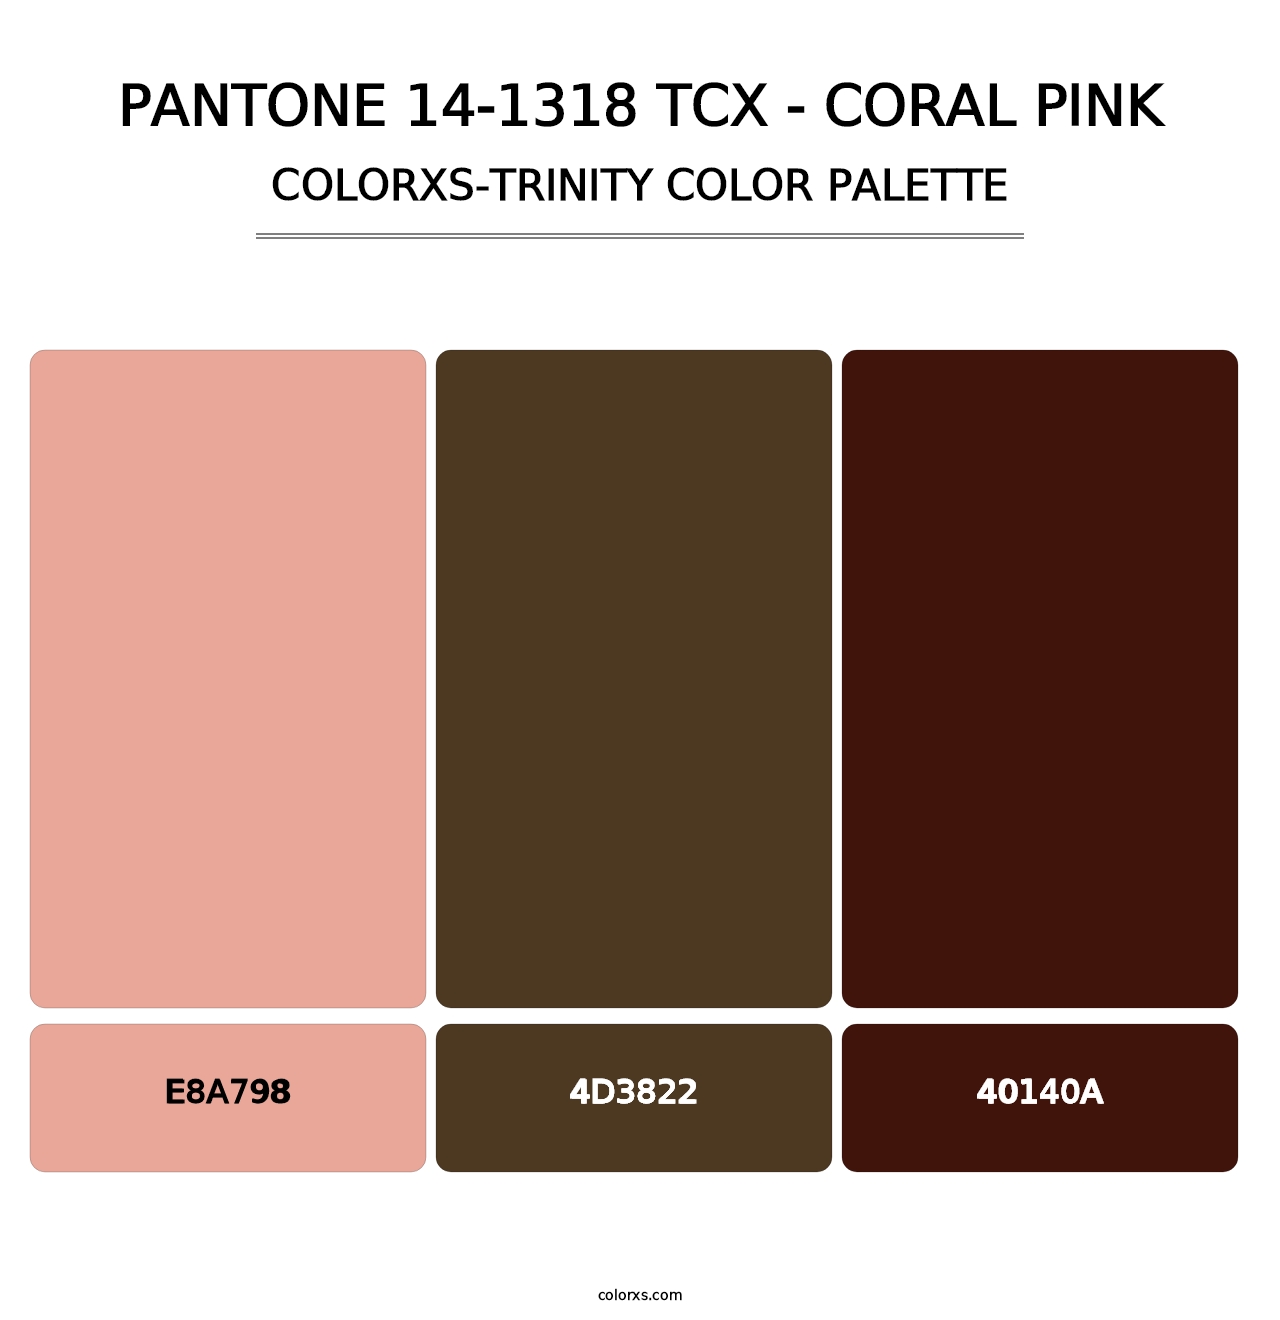 PANTONE 14-1318 TCX - Coral Pink - Colorxs Trinity Palette